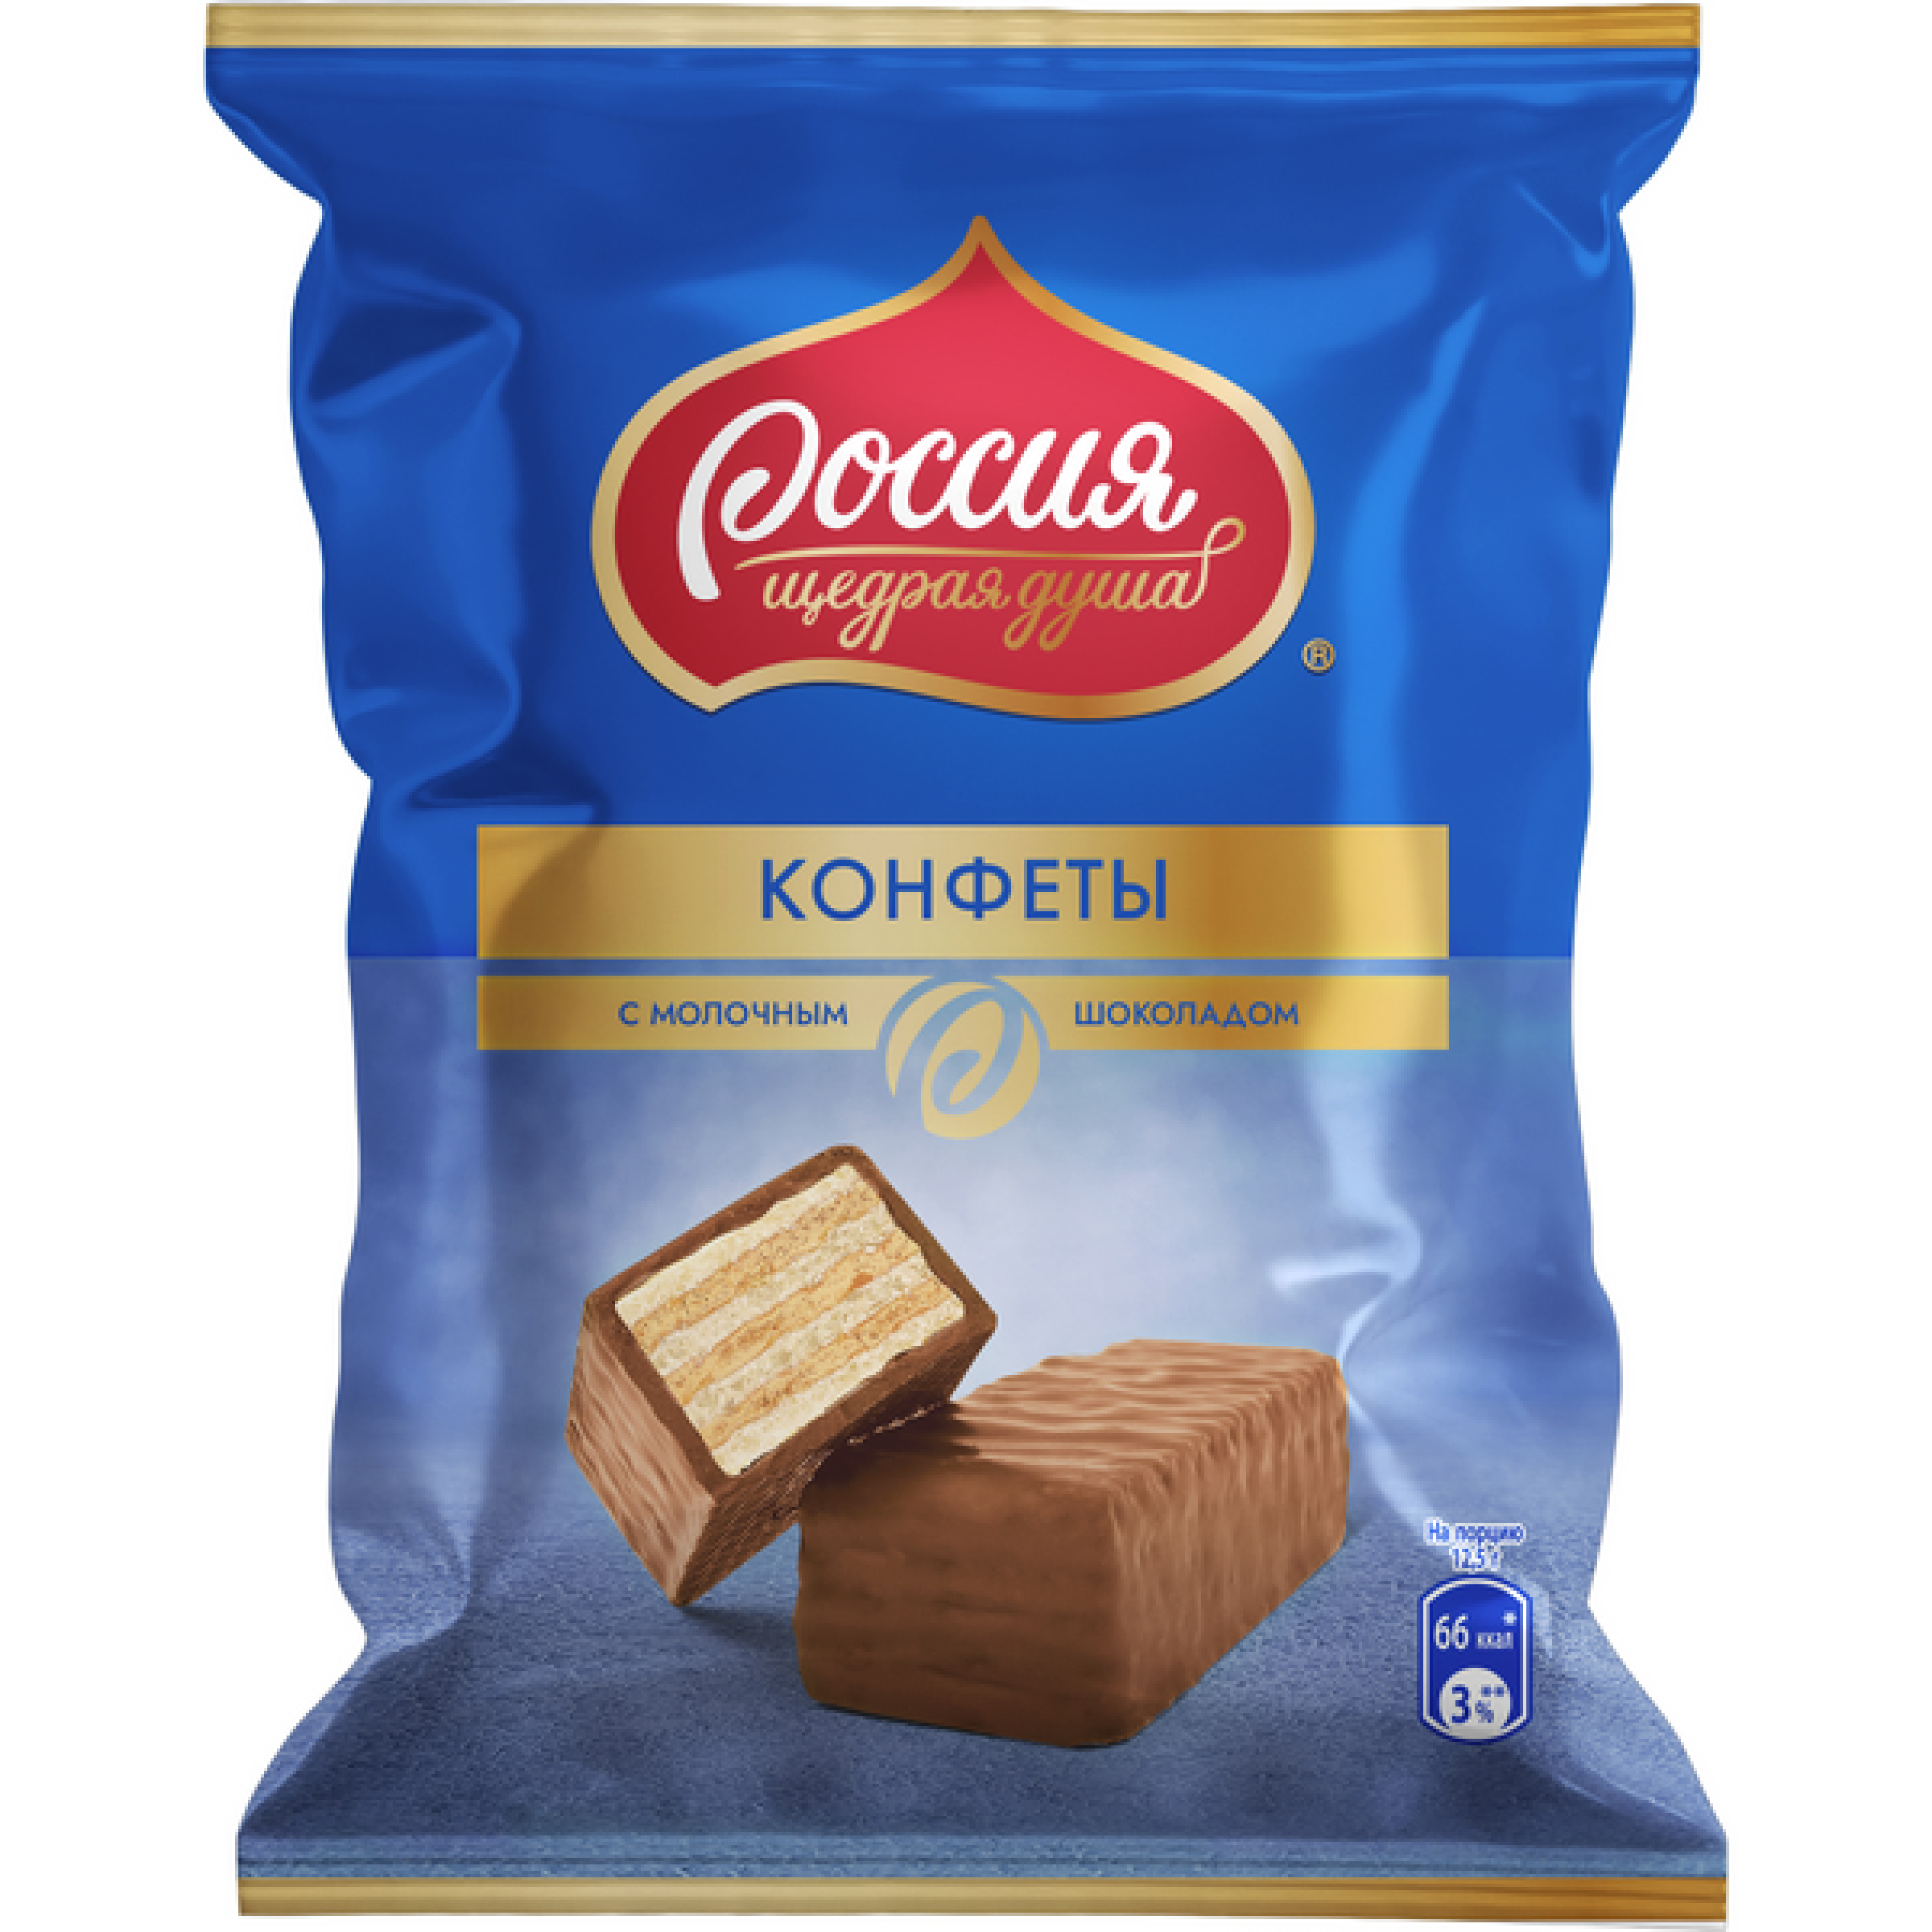 Конфеты Россия - щедрая душа с вафлей и молочным шоколадом 128 г